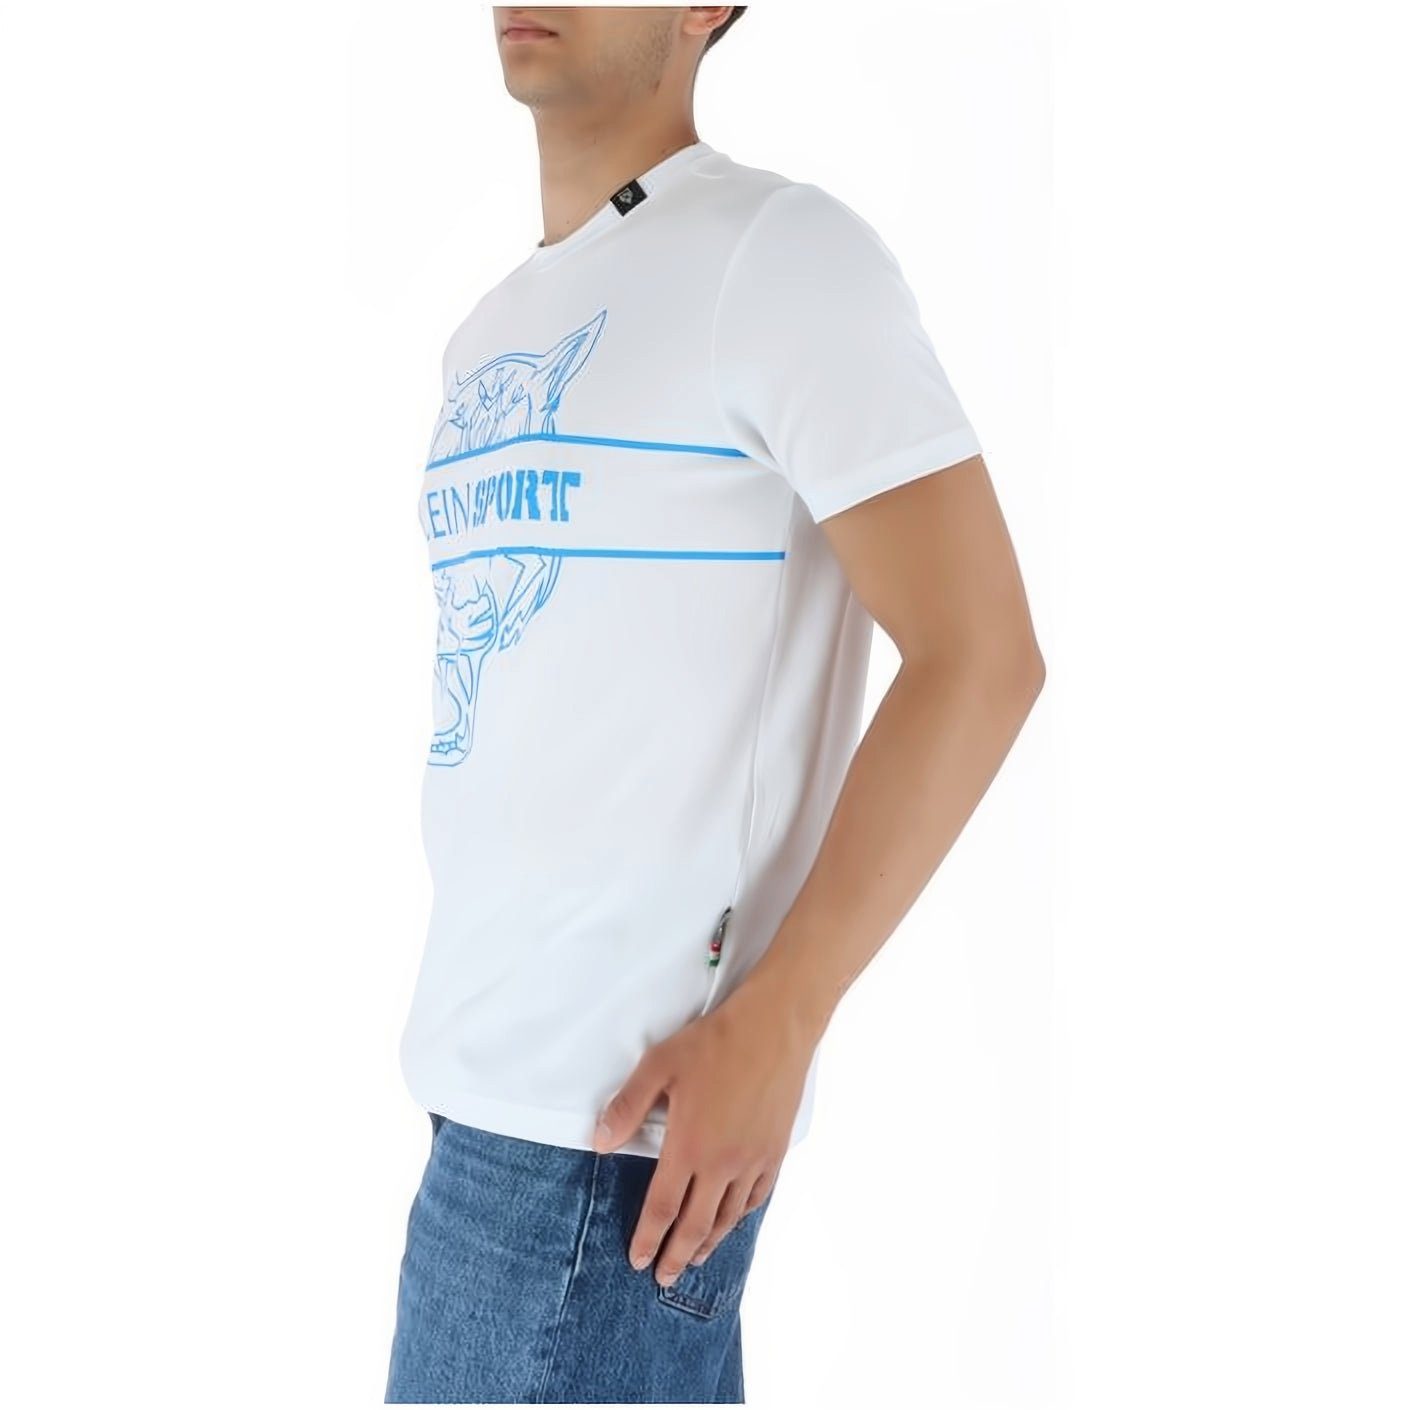 PLEIN SPORT T-Shirt vielfältige Farbauswahl Tragekomfort, hoher Look, Stylischer ROUND NECK